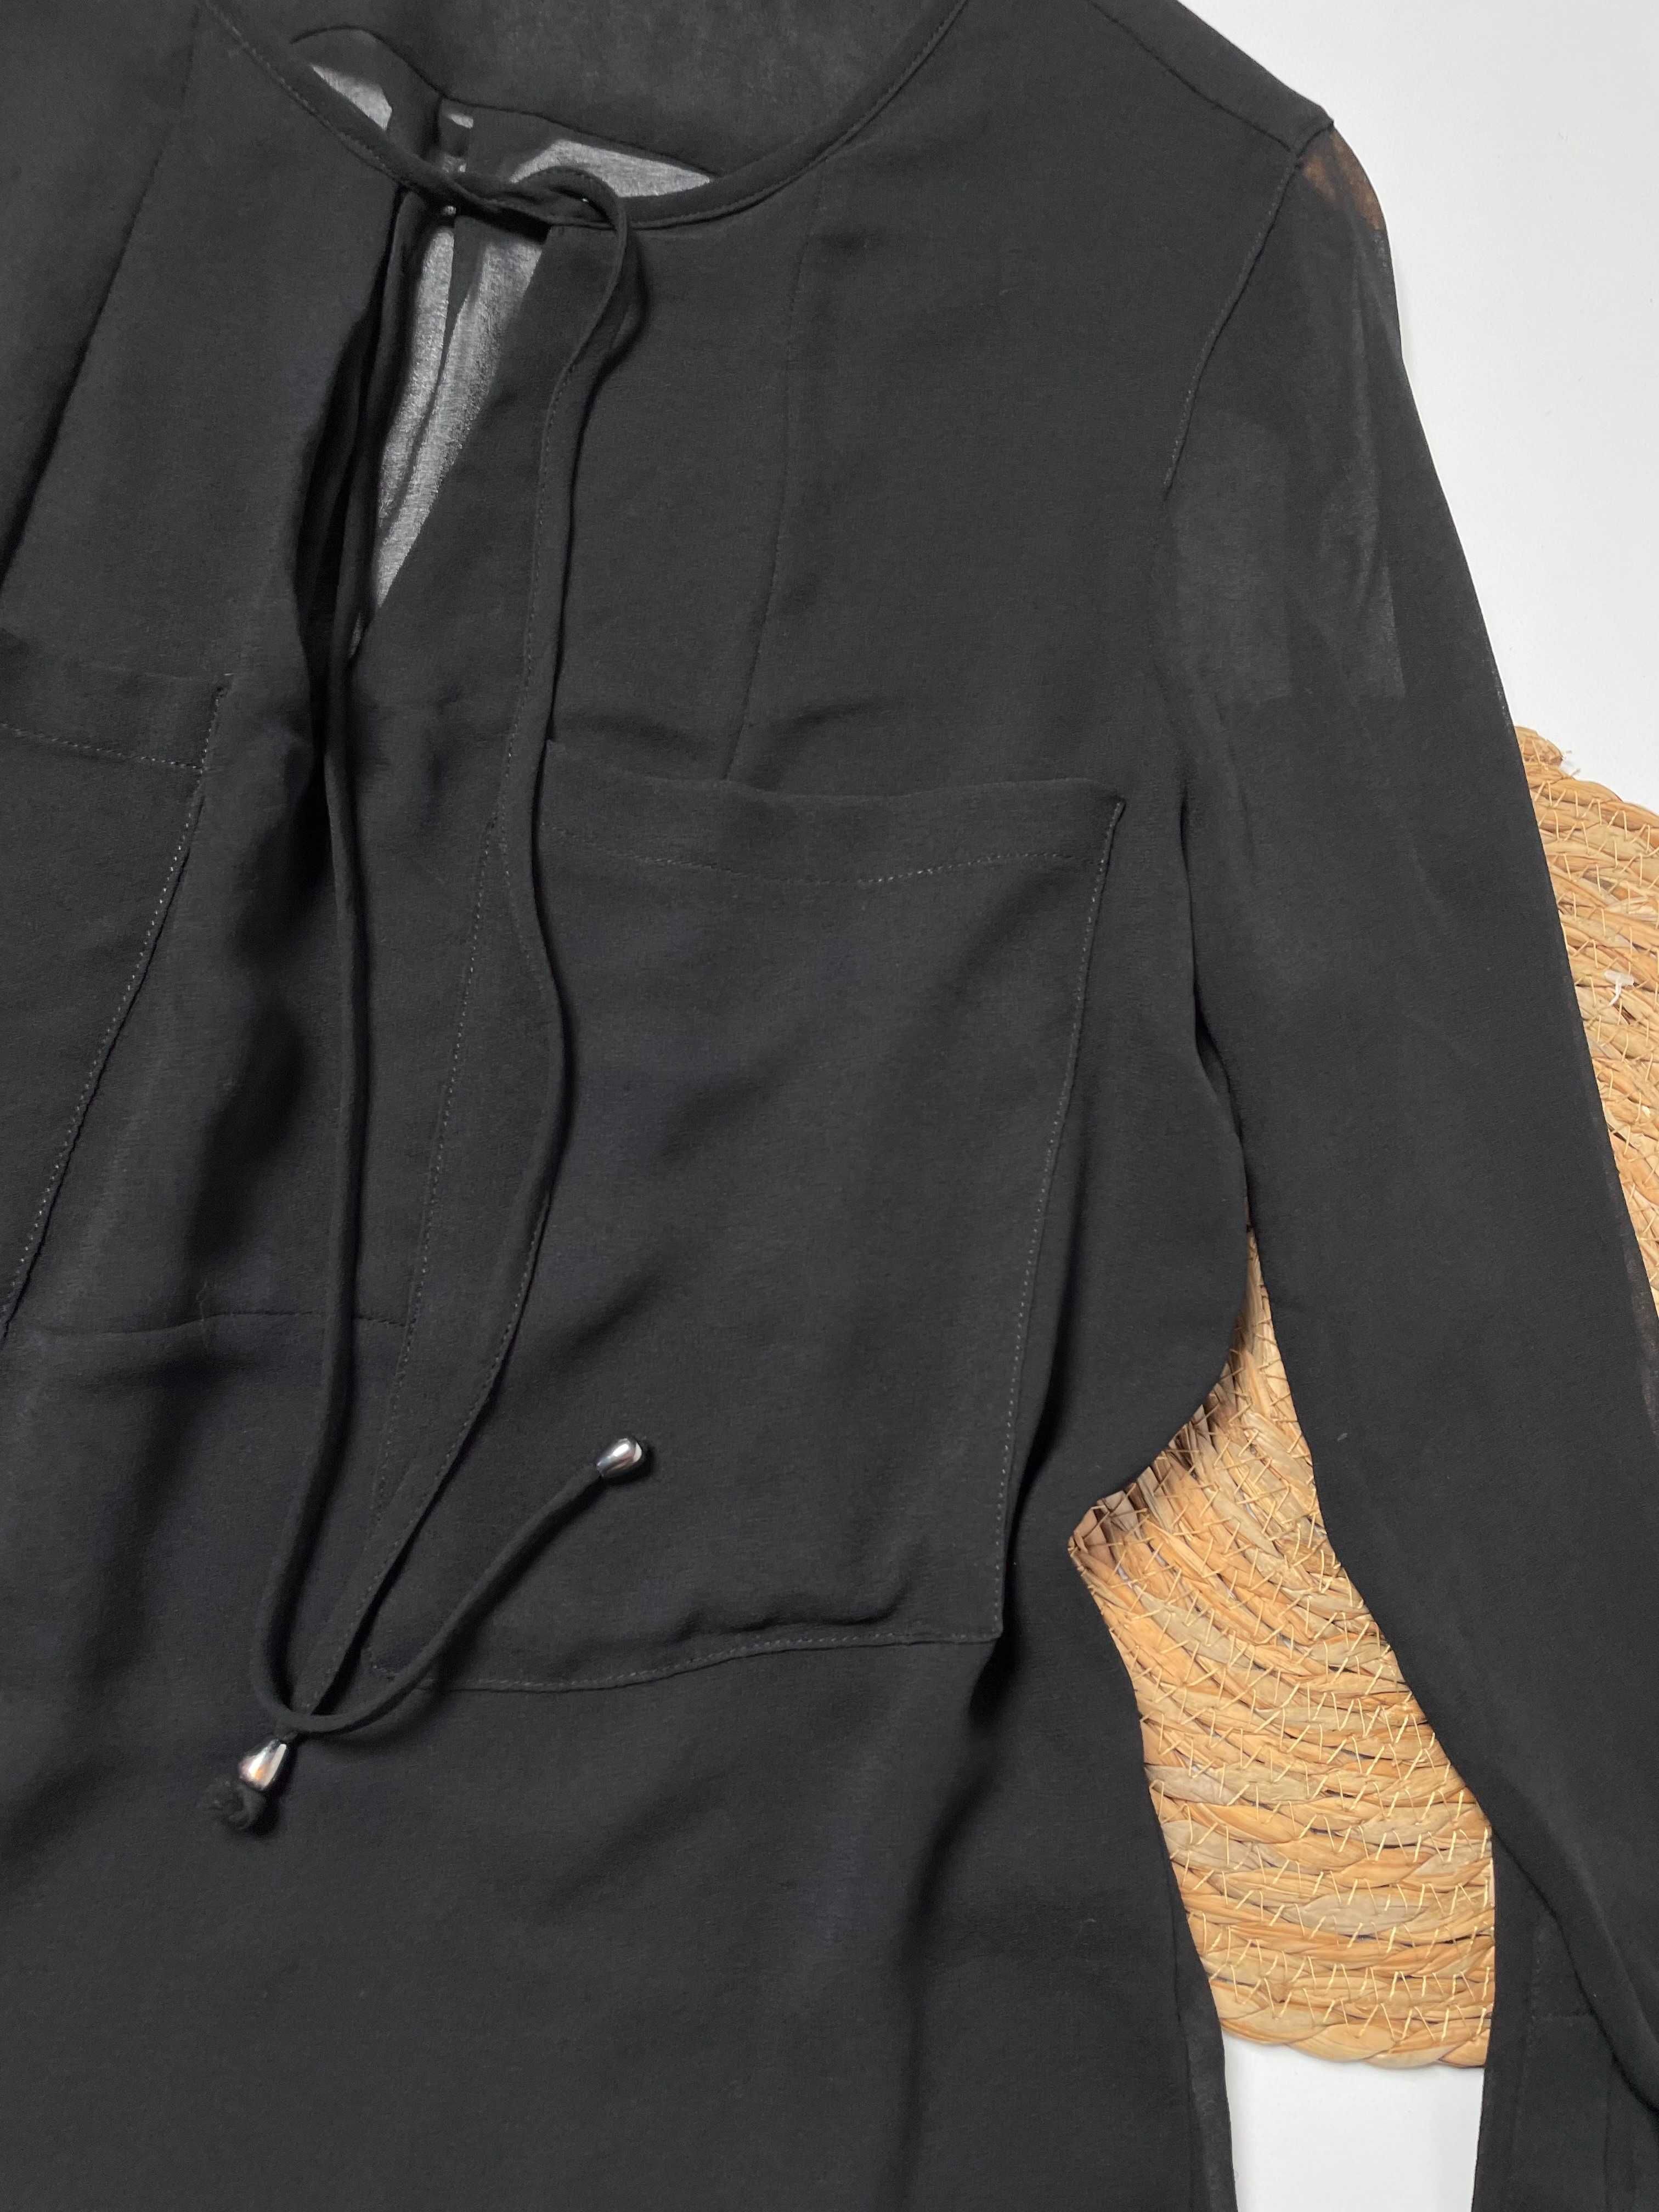 Damska czarna bluzka Zara S(36)